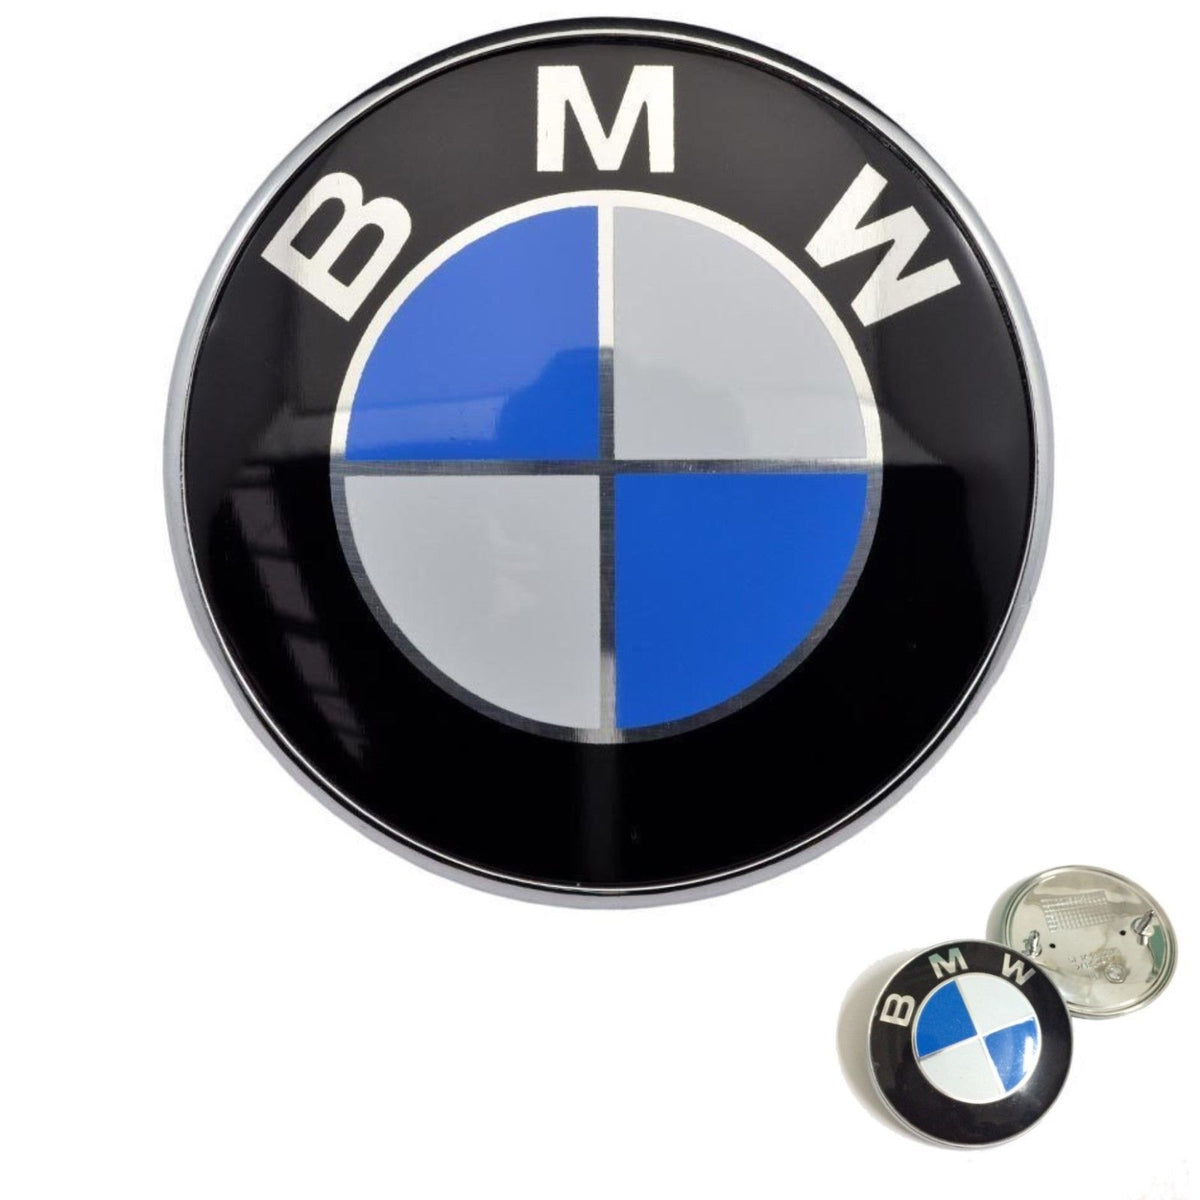 82MM BMW EMBLEM HOOD BADGE 2 PINS